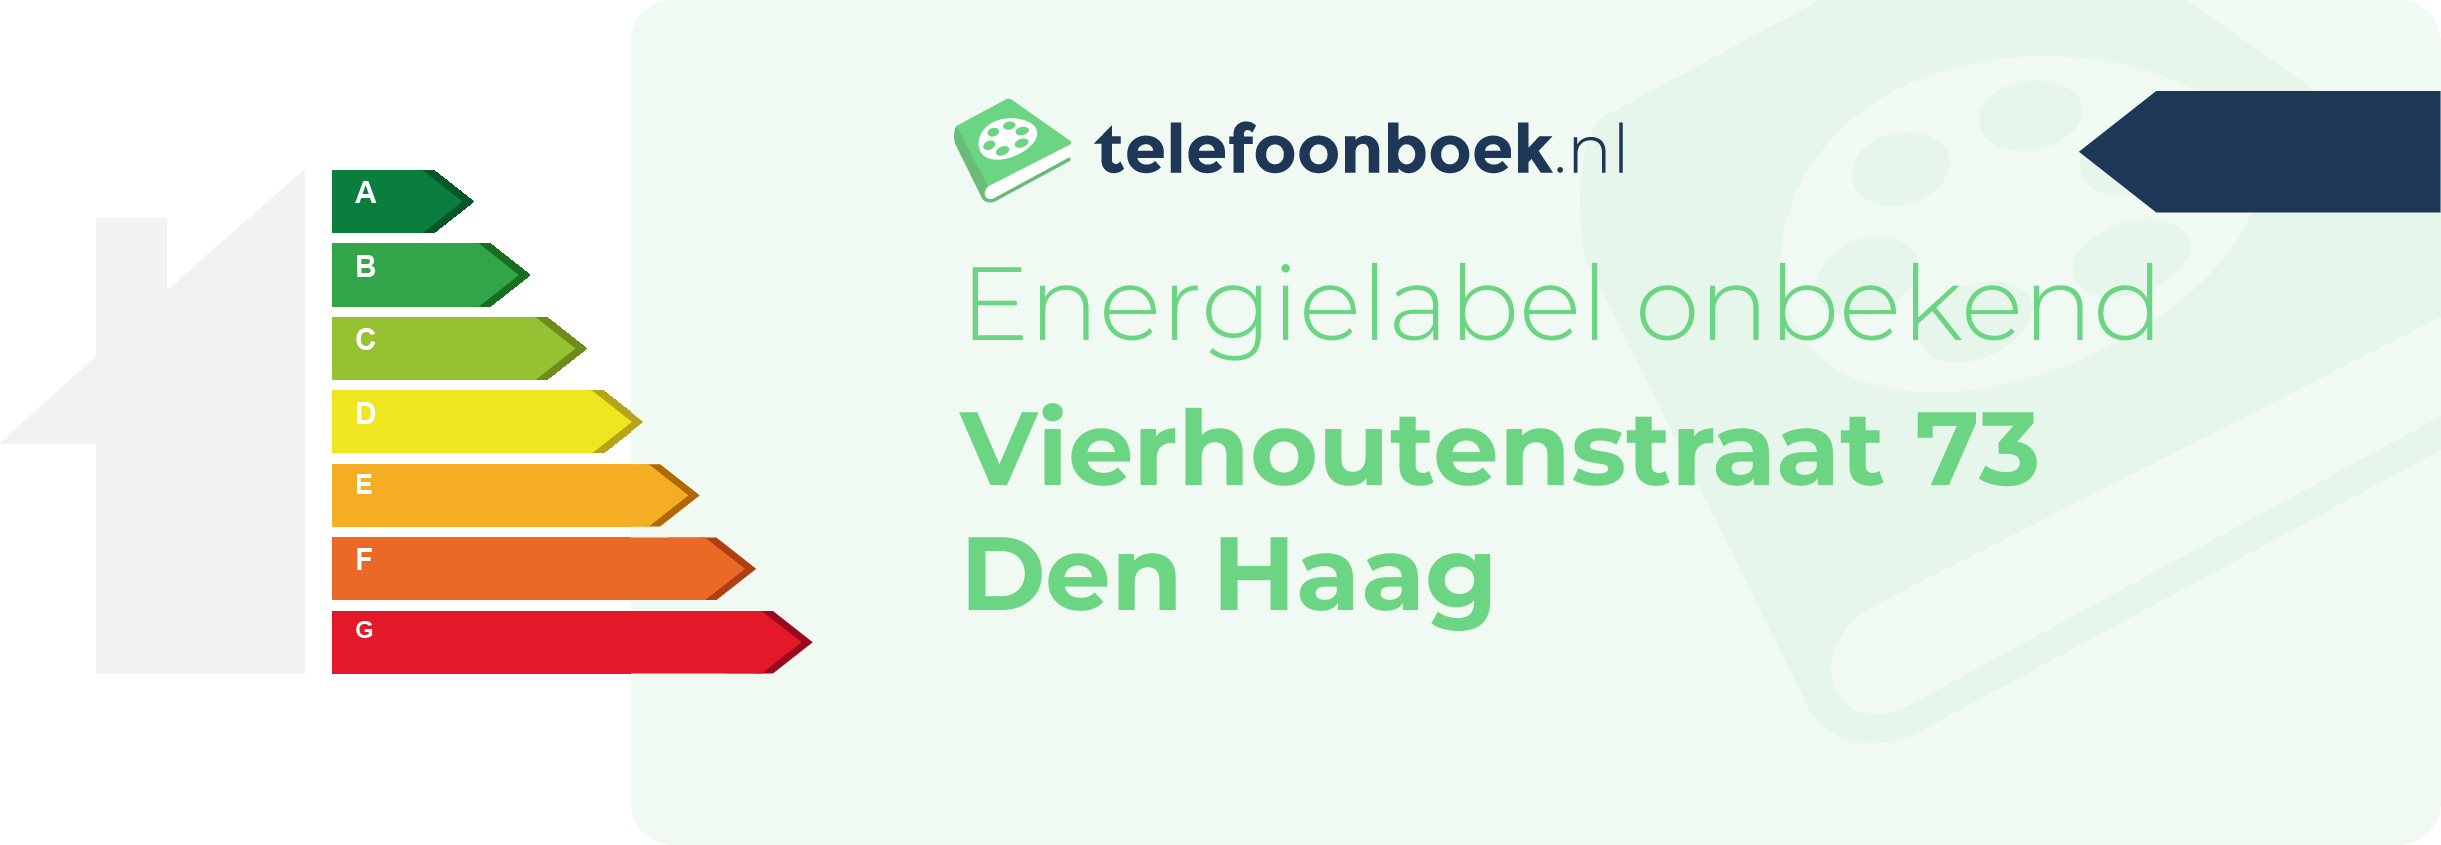 Energielabel Vierhoutenstraat 73 Den Haag